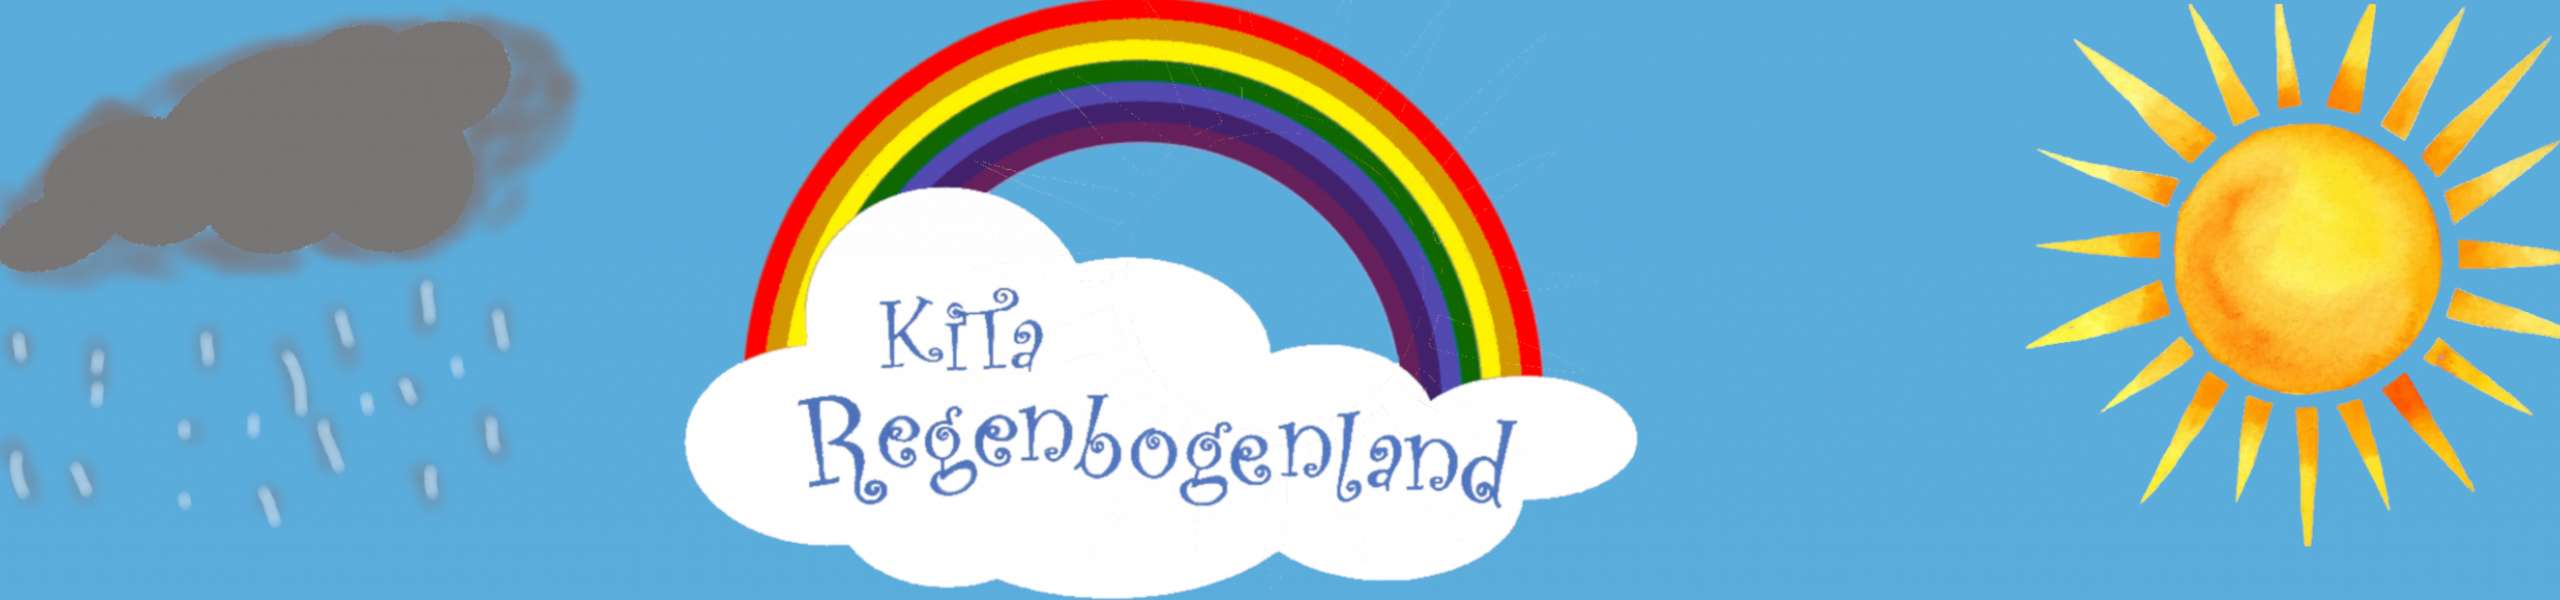 regenbogenland logo lang ©Stadt Landsberg